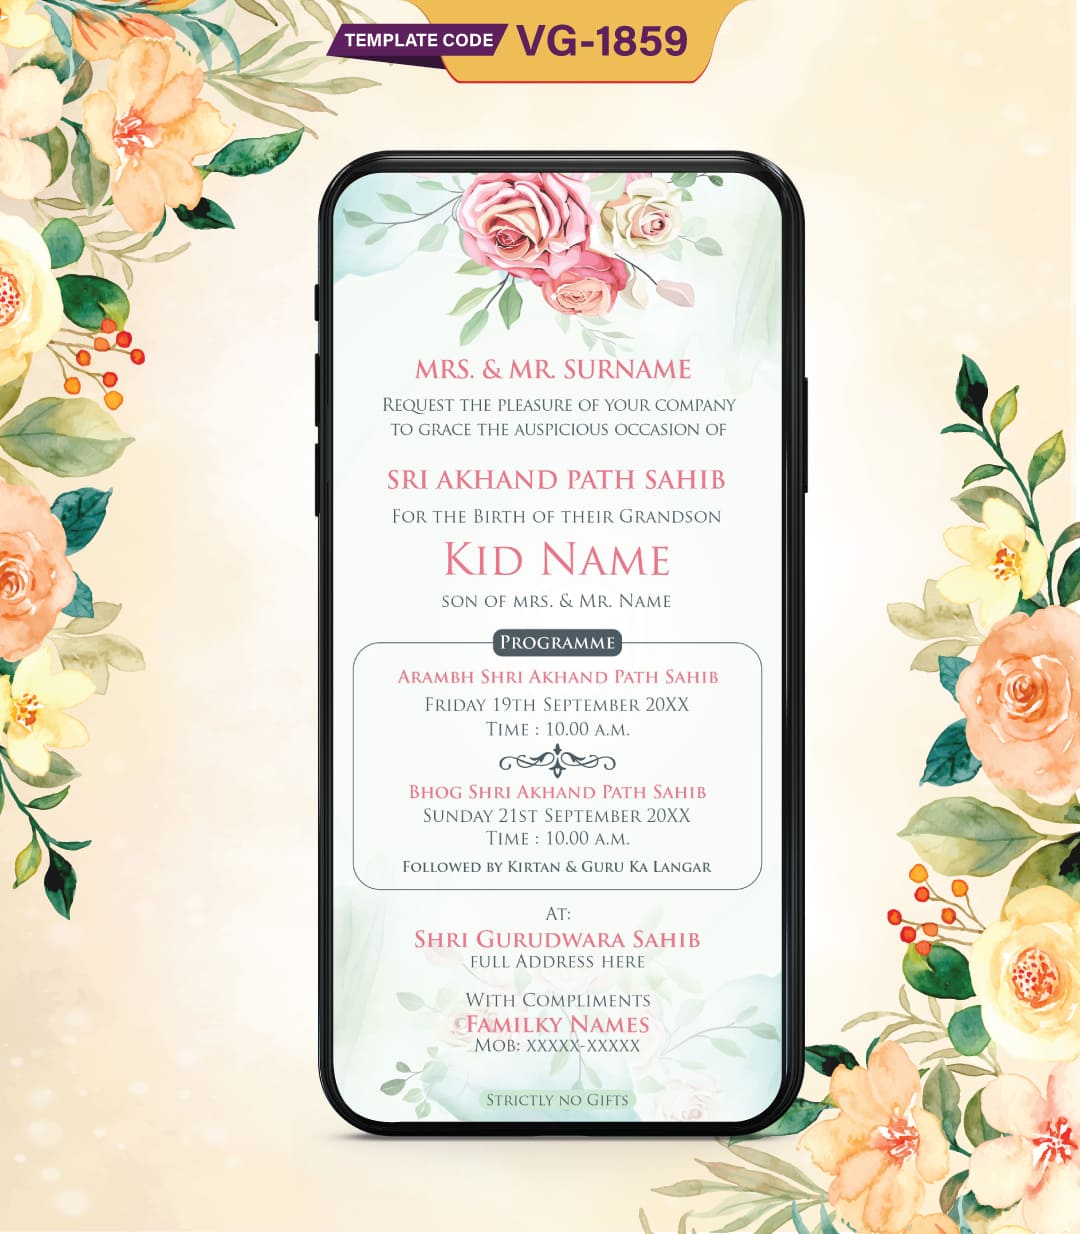 Shri Akhand Path Sahib Invitation Card